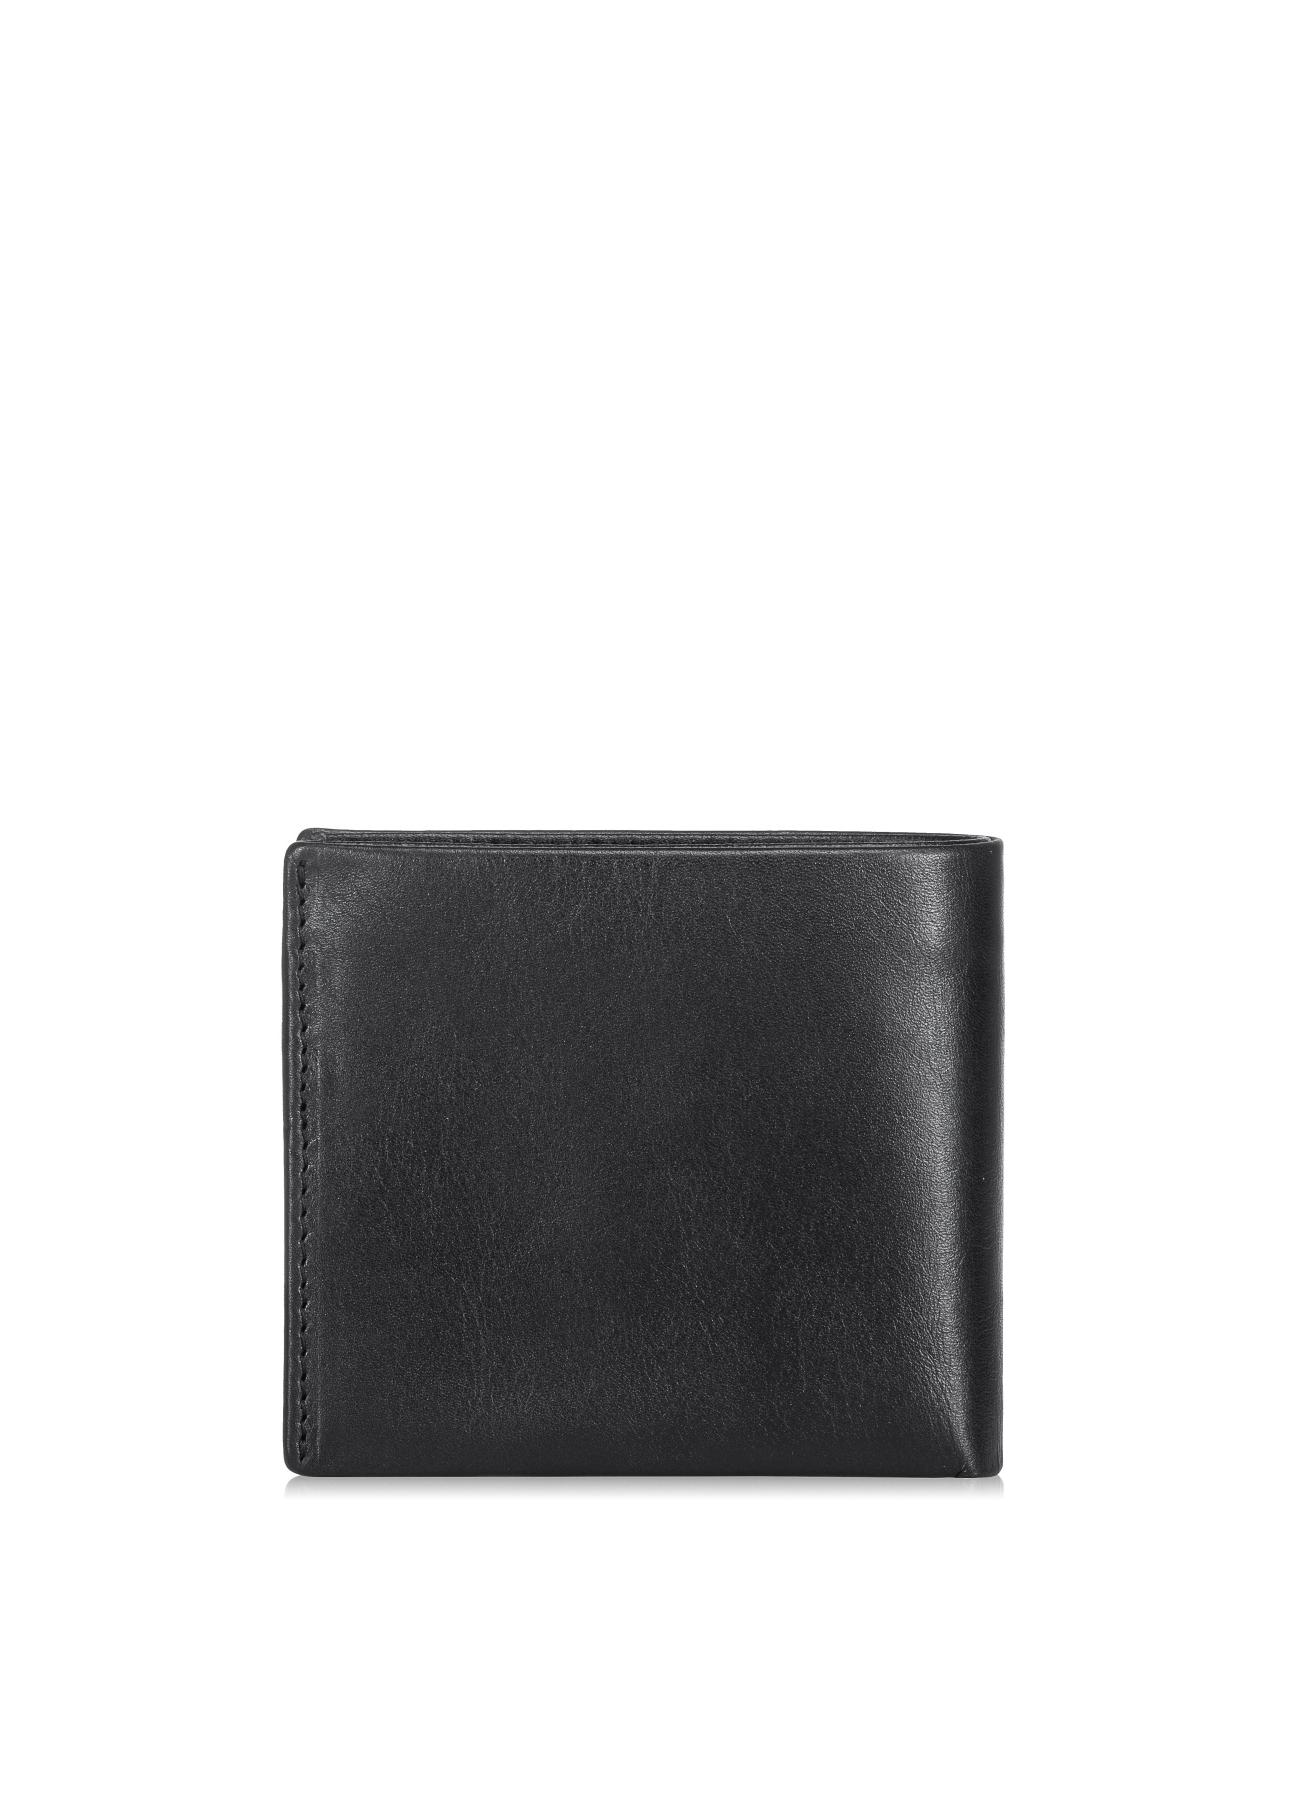 Czarny skórzany portfel męski PORMS-0408A-99(Z23)